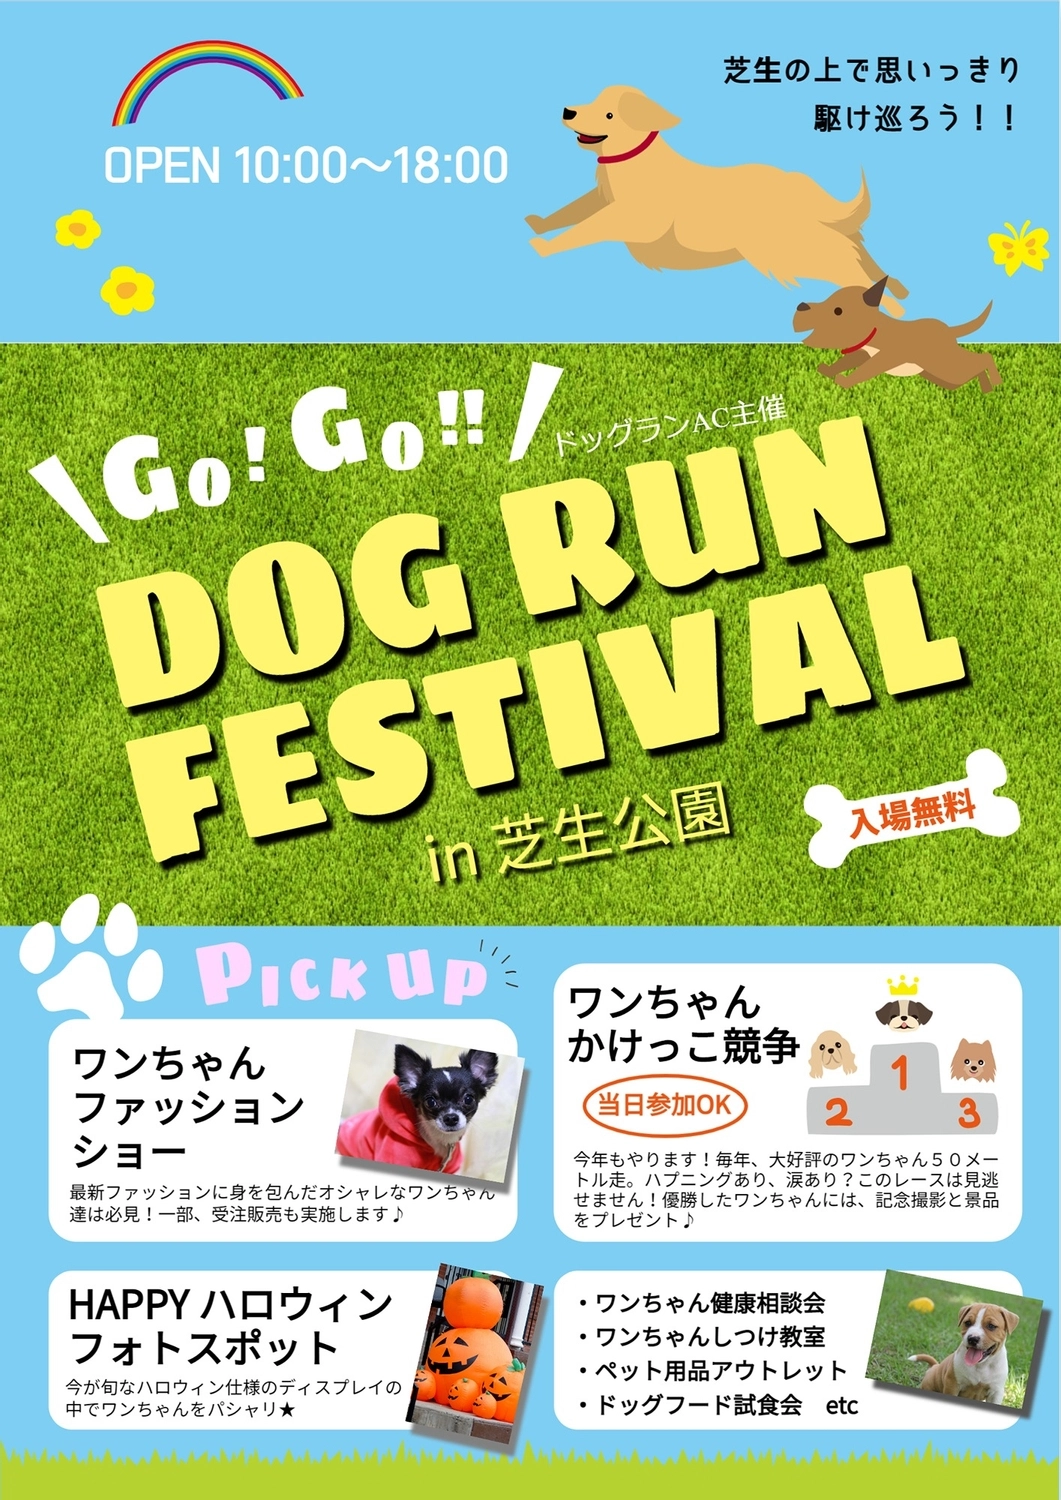 ドッグランフェスティバル, Pets, news, DOGRUN FESTIVAL, Flyer template